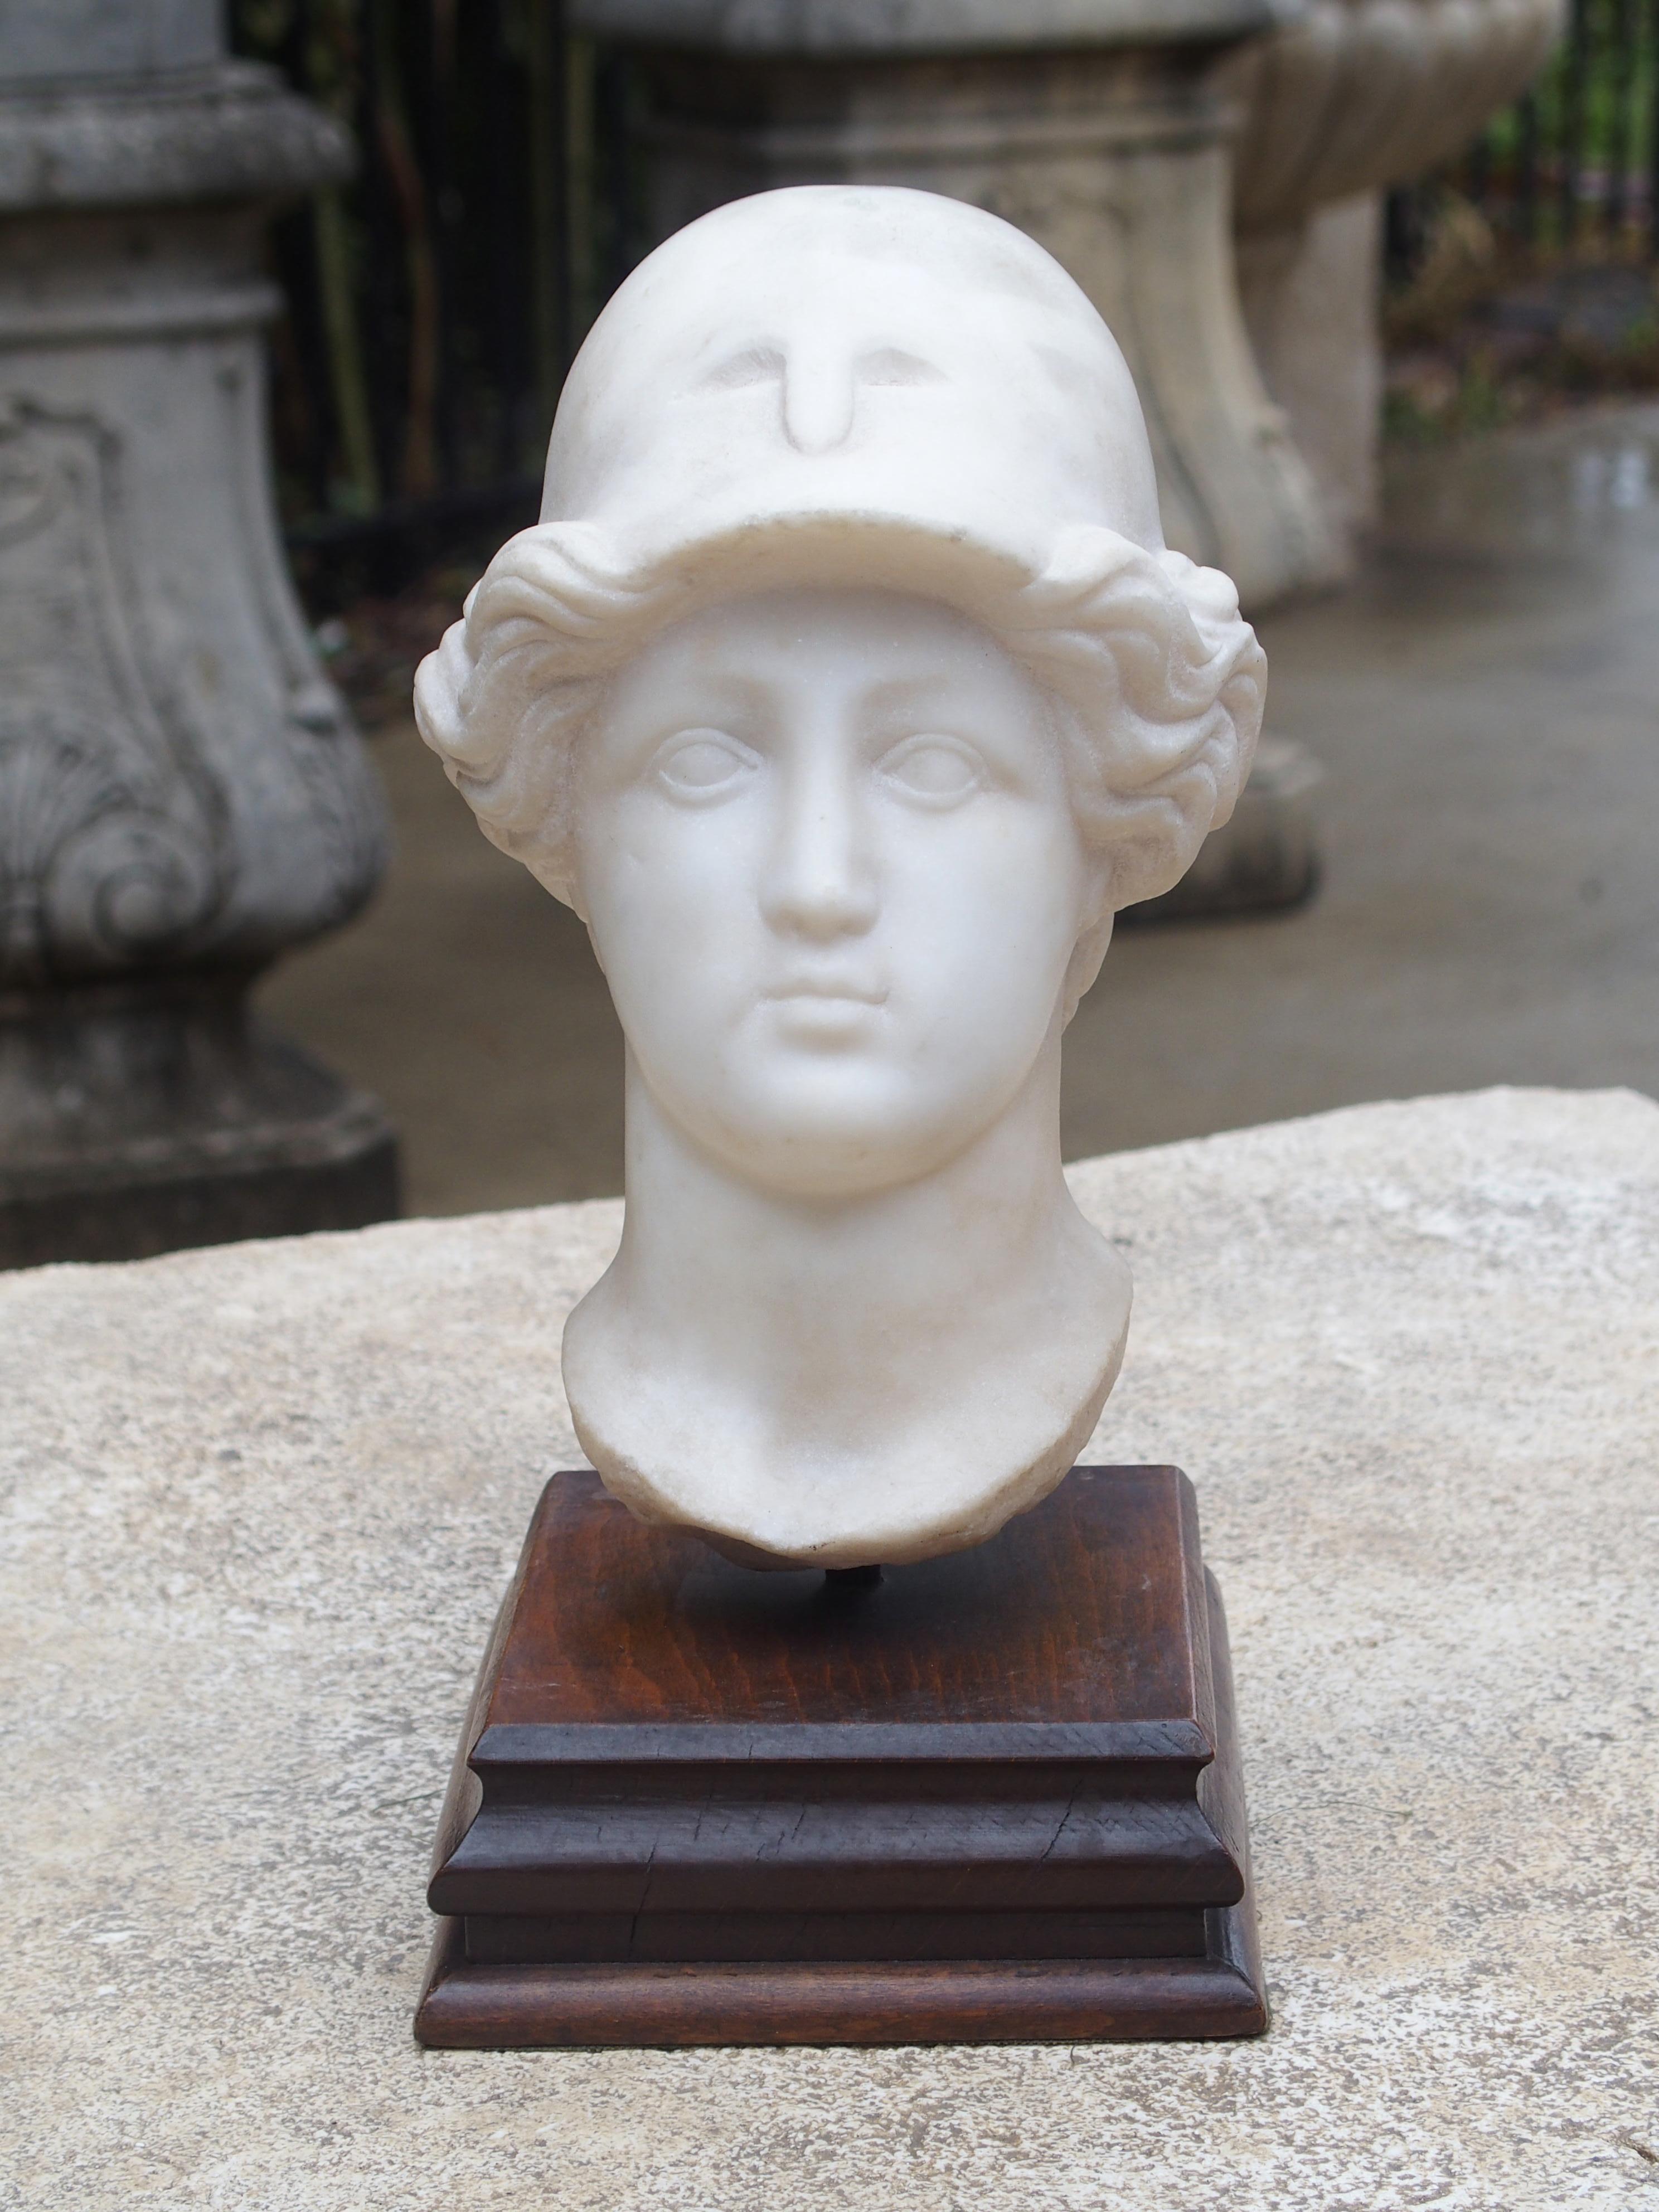 Il s'agit d'une ancienne tête italienne en marbre sculpté d'un jeune homme portant un casque gréco-romain sur une base en bois. Le sculpteur a habilement dépeint son visage comme une innocence aux grands yeux. La tête de marbre repose sur la base en